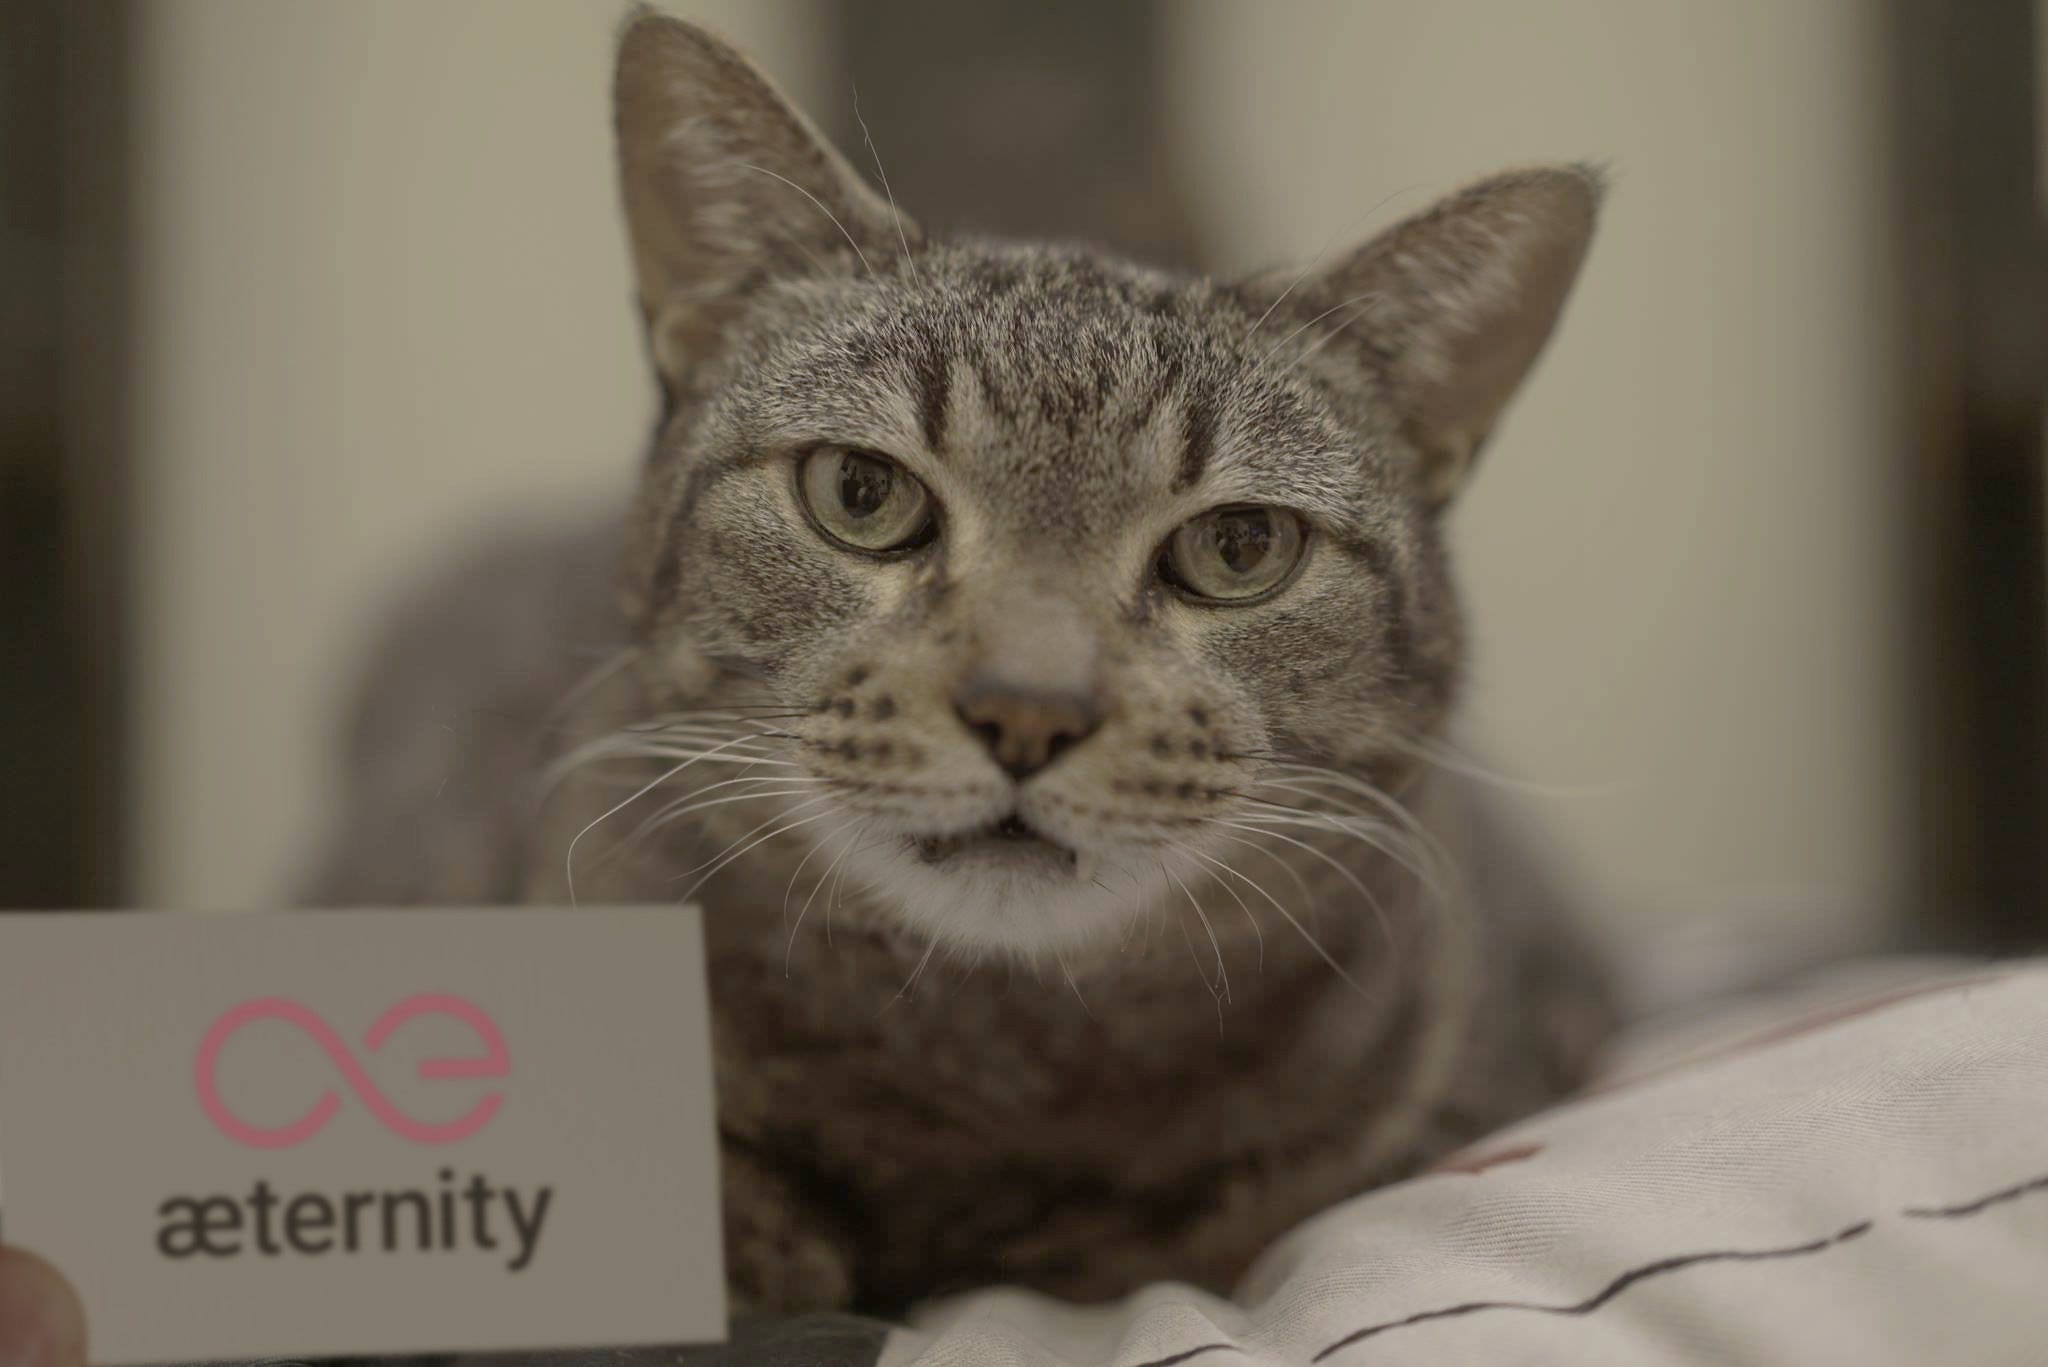 A lovely feline member of the æcommunity